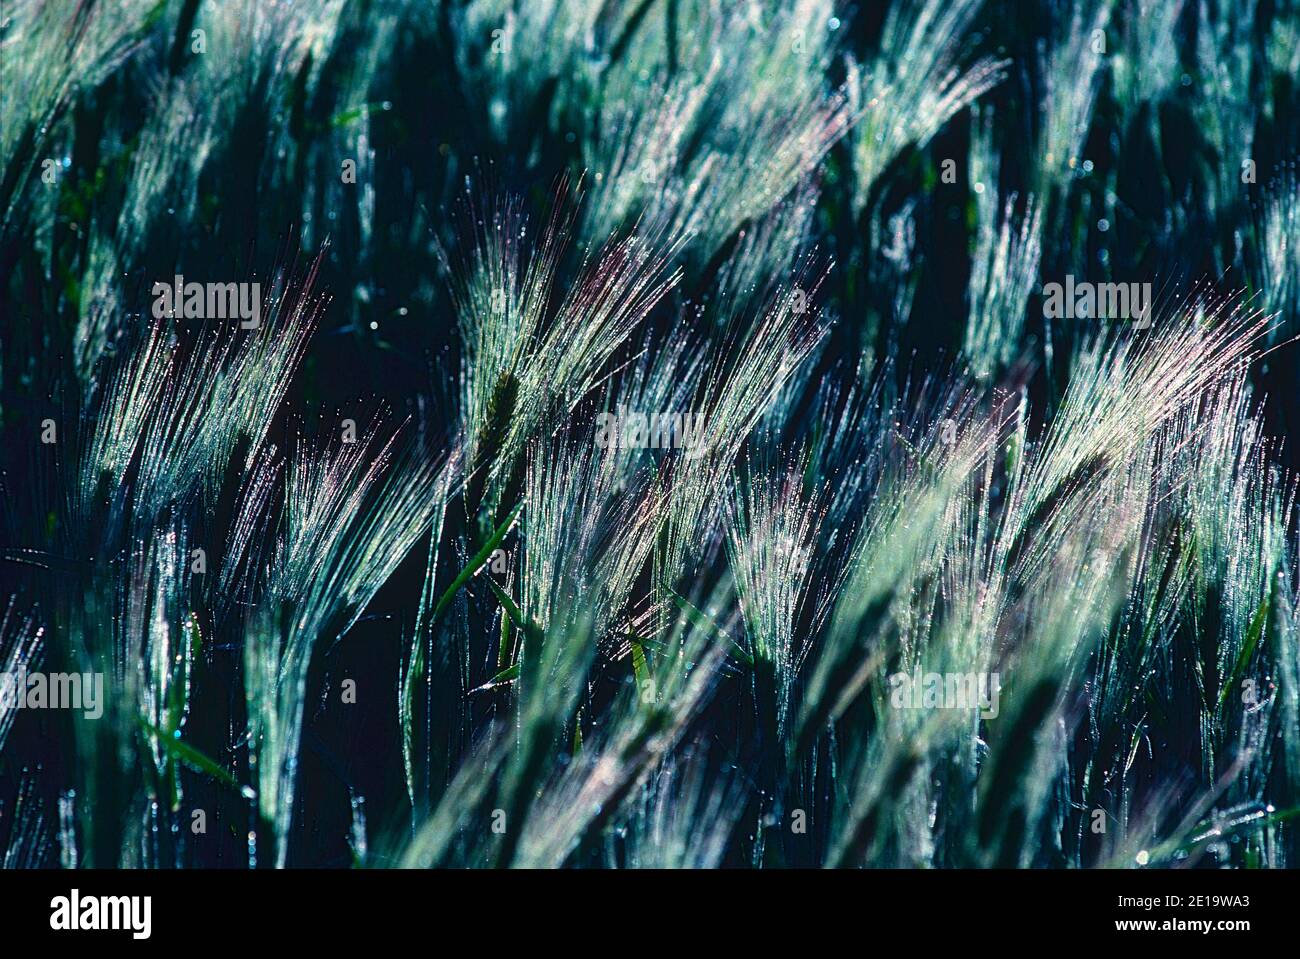 Barley, Hordeum vulgare, Poaceae, spikes, field, useful plant, cereal grain, Spain Stock Photo